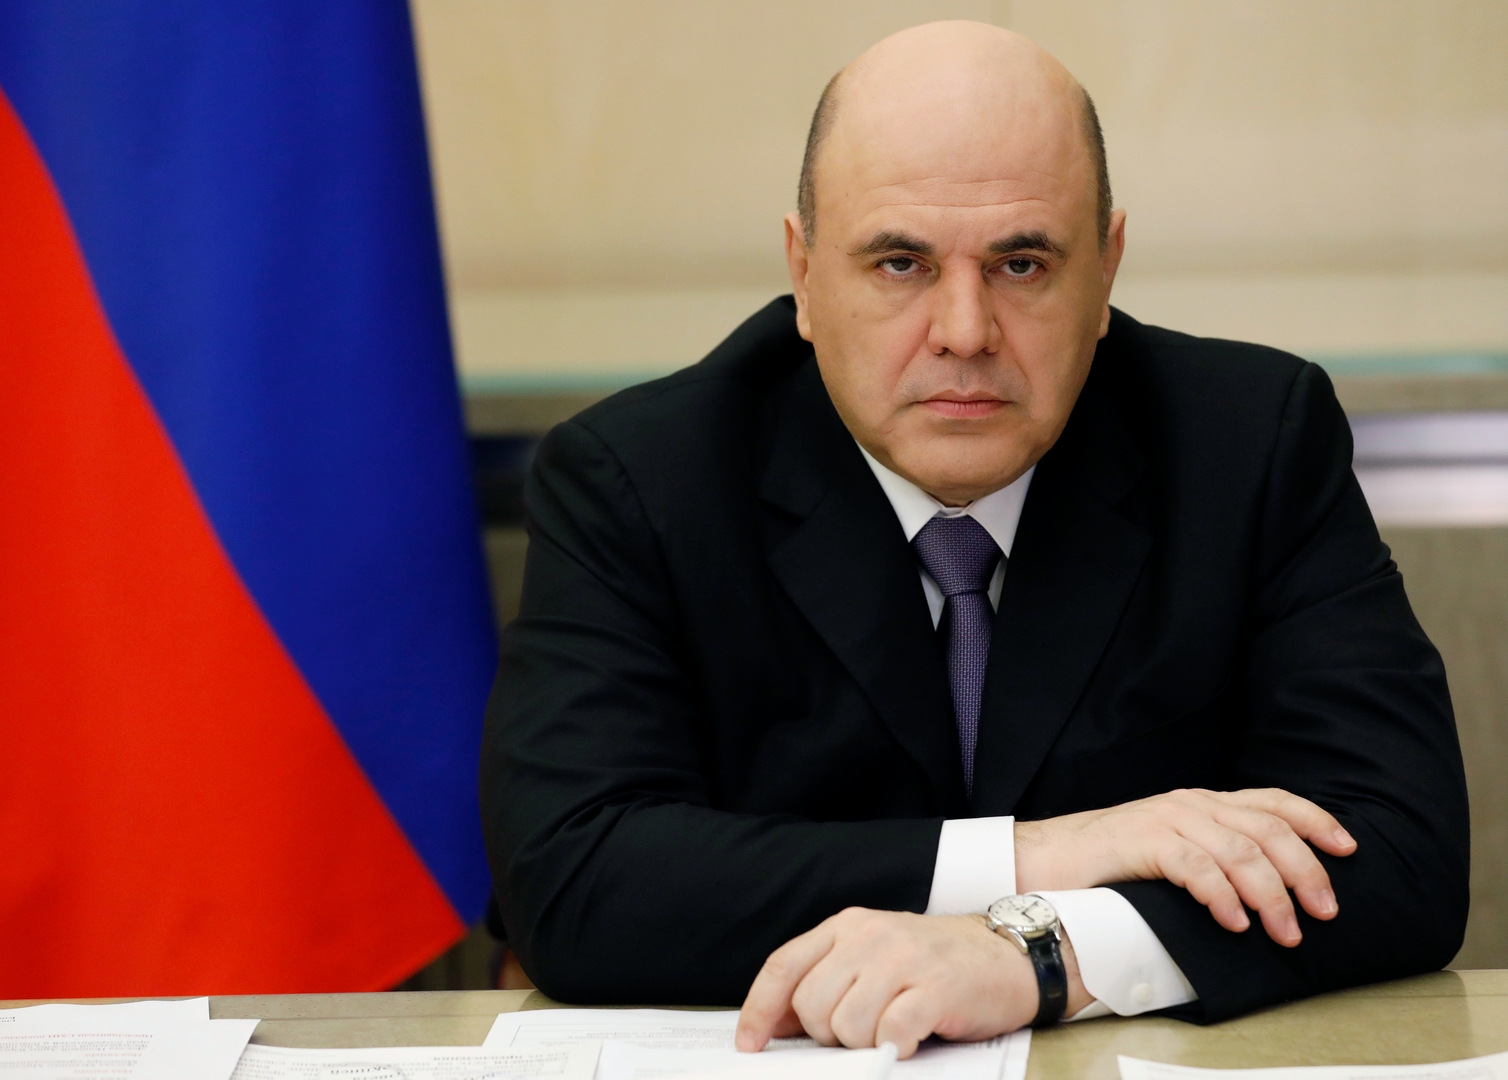 رئيس الوزراء الروسي يستأنف عمله بعد شفائه من كورونا